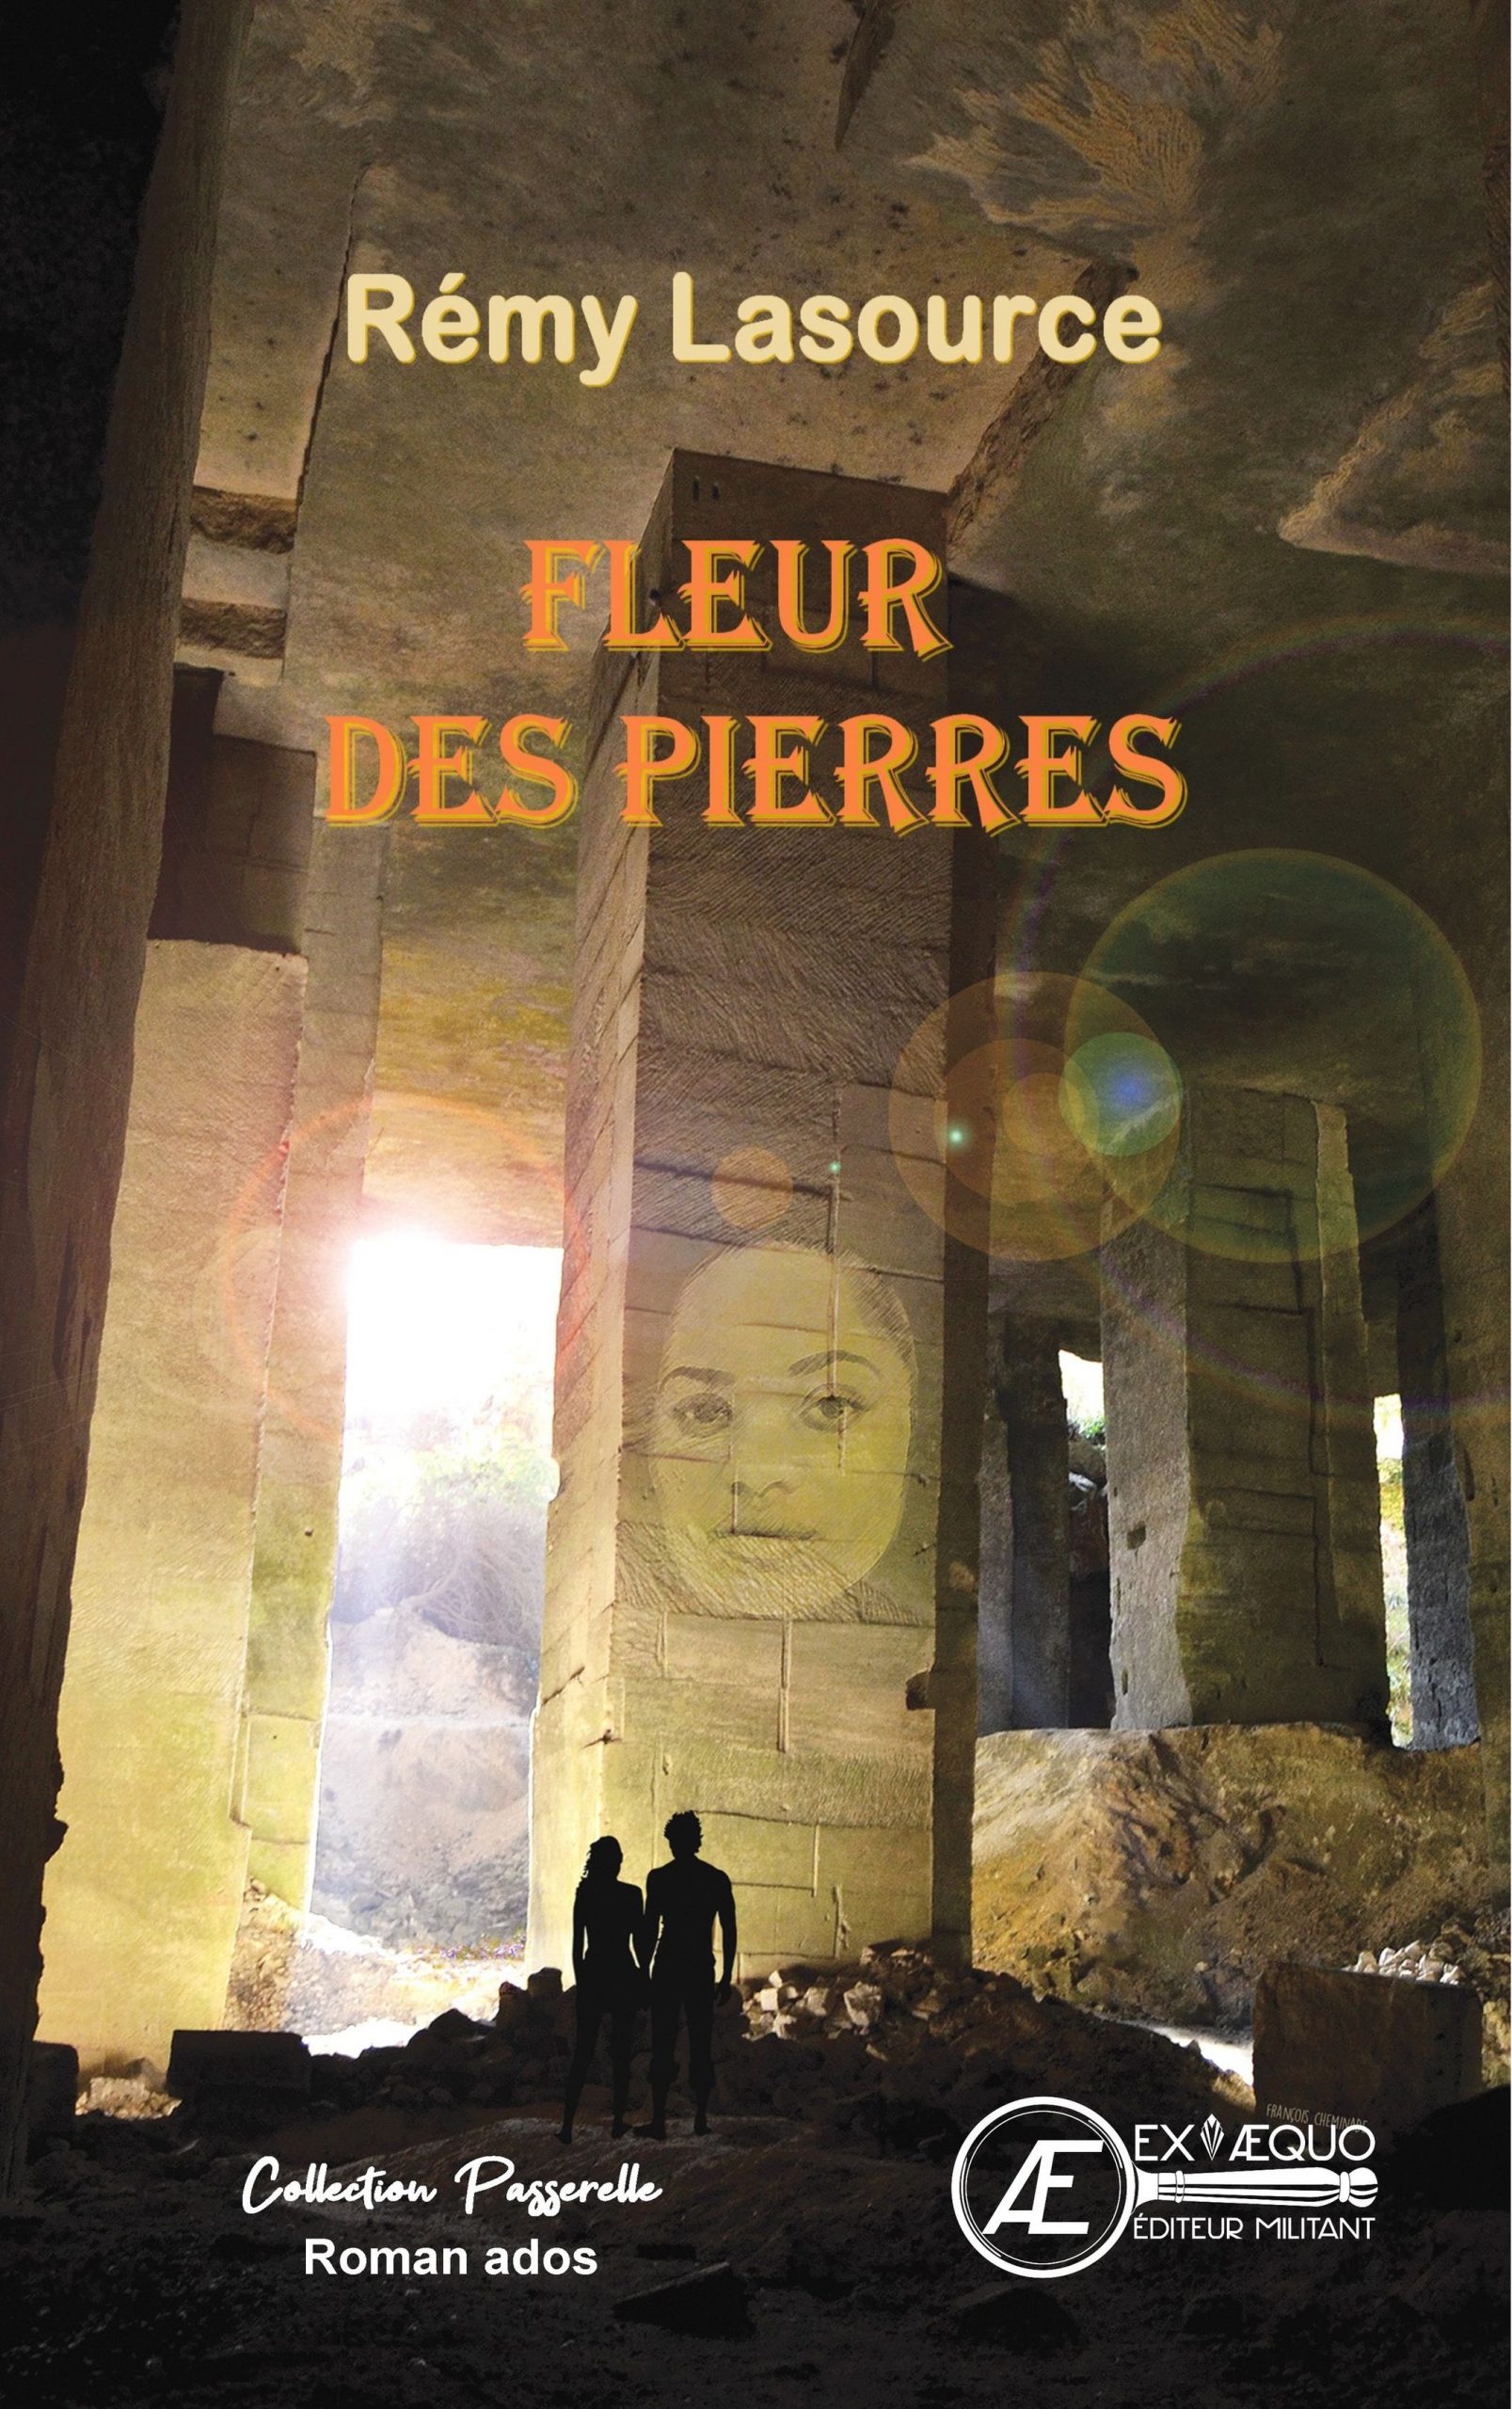 You are currently viewing Fleur des pierres, de Rémy Lasource